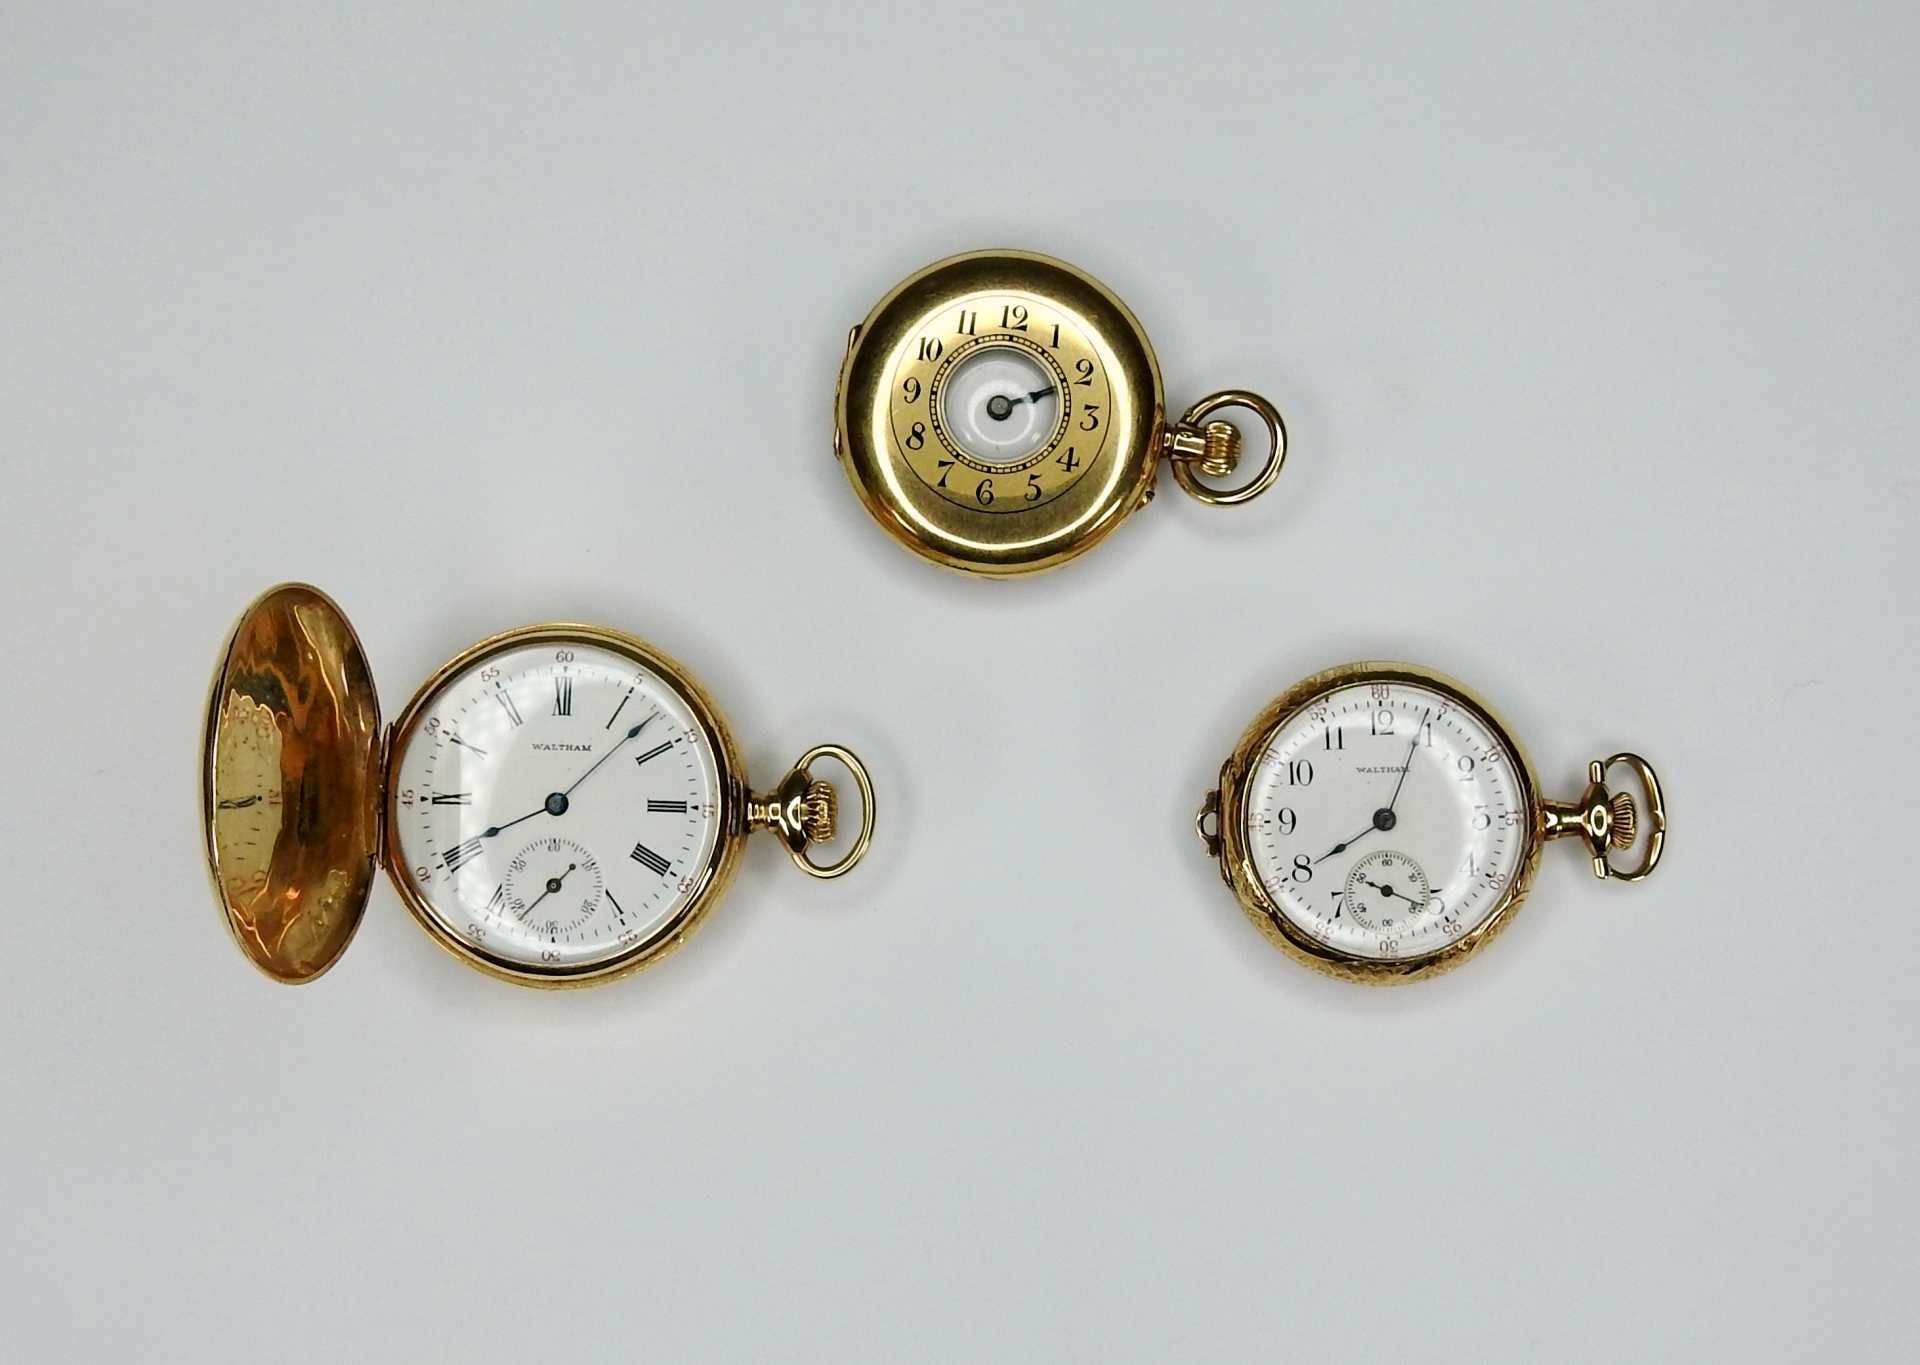 Konvolut von kleinen TaschenuhrenDas Konvolut besteht aus 3 Savonette-Uhren: 1 kleine